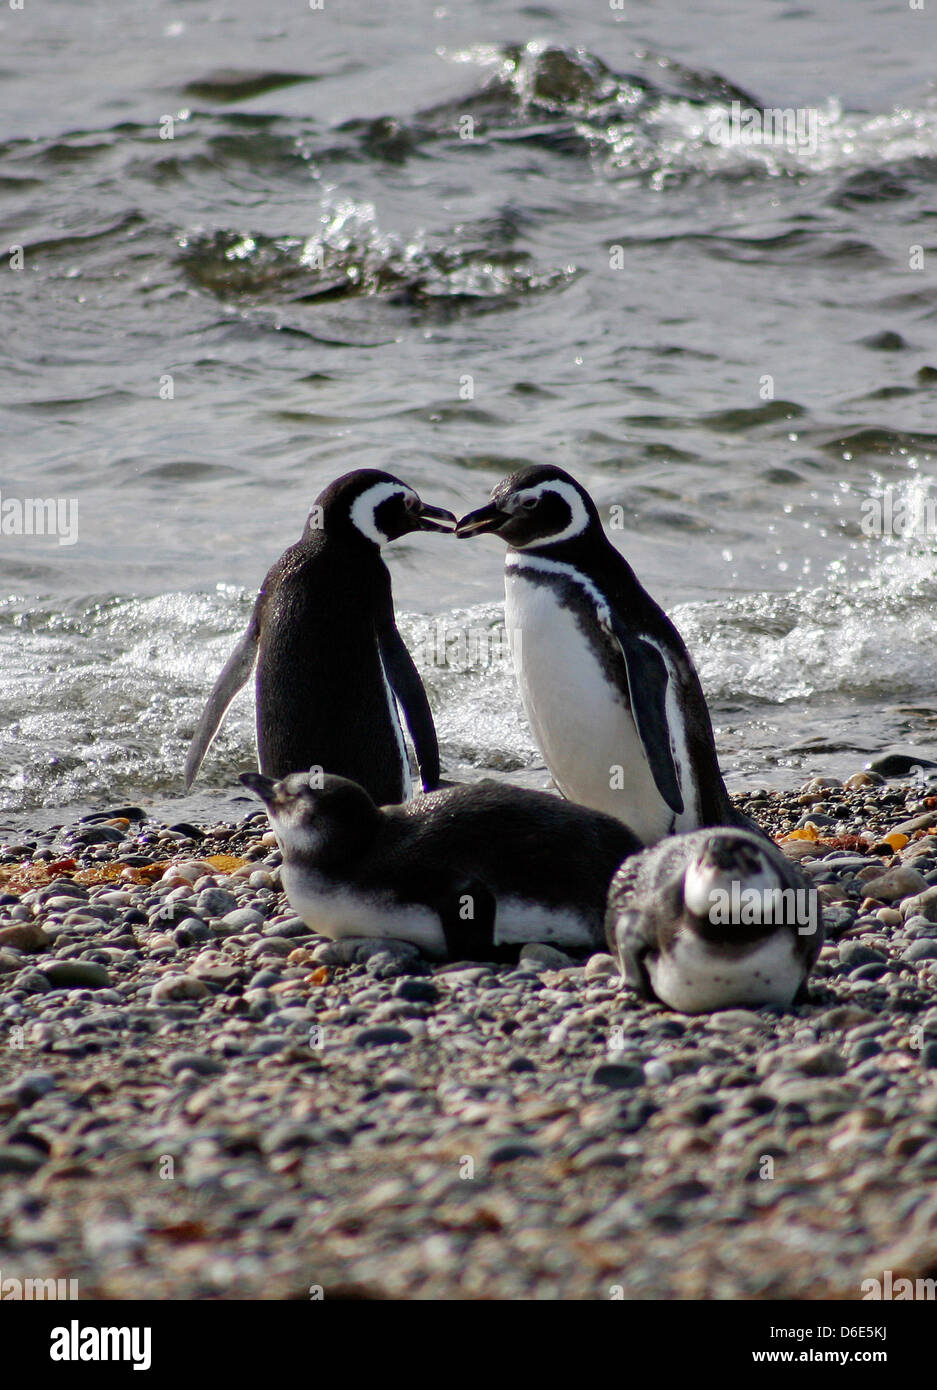 Archivo - Un archivo de imagen de fecha 27 de noviembre de 2008 muestra pingüinos de Magallanes (Spheniscus magellanicus) pasear a orillas del Seno Otway, cerca de la ciudad portuaria de Punta Áreas, Chile. Más de diez mil de estos pingüinos llegan aquí para aparearse entre septiembre y abril. Foto: Jan Woitas Foto de stock